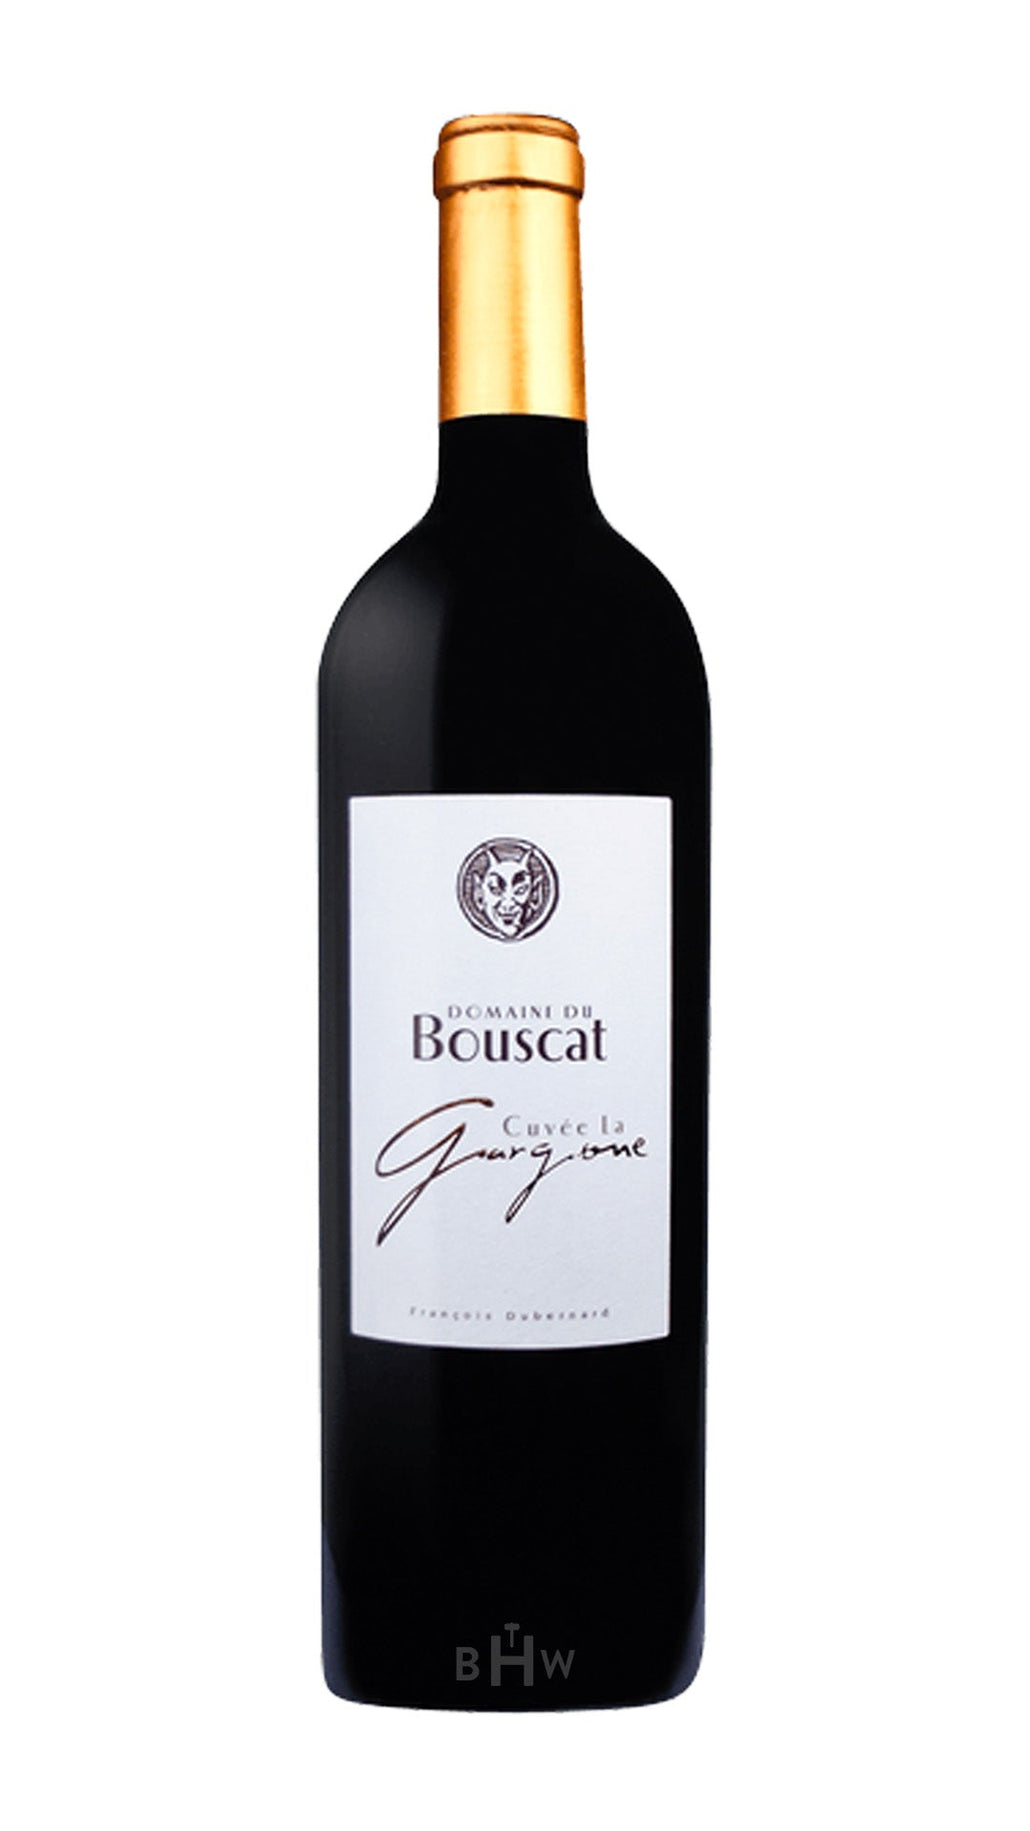 2016 Domaine du Bouscat Cuvee La Gargone Bordeaux Supérieur